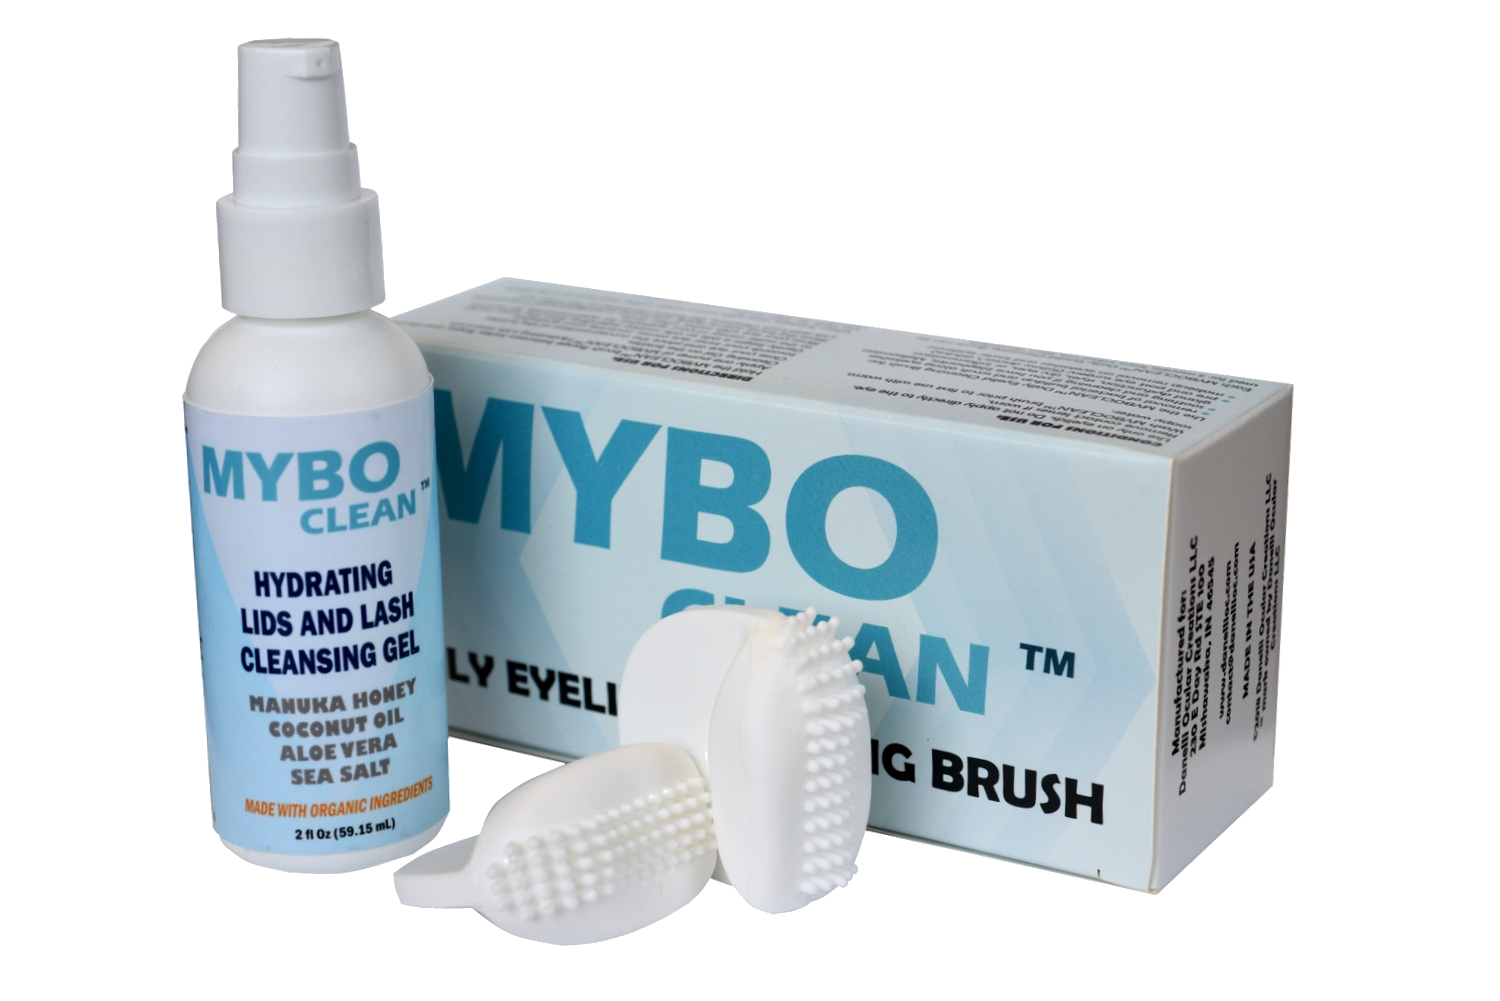 MYBO CLEAN System